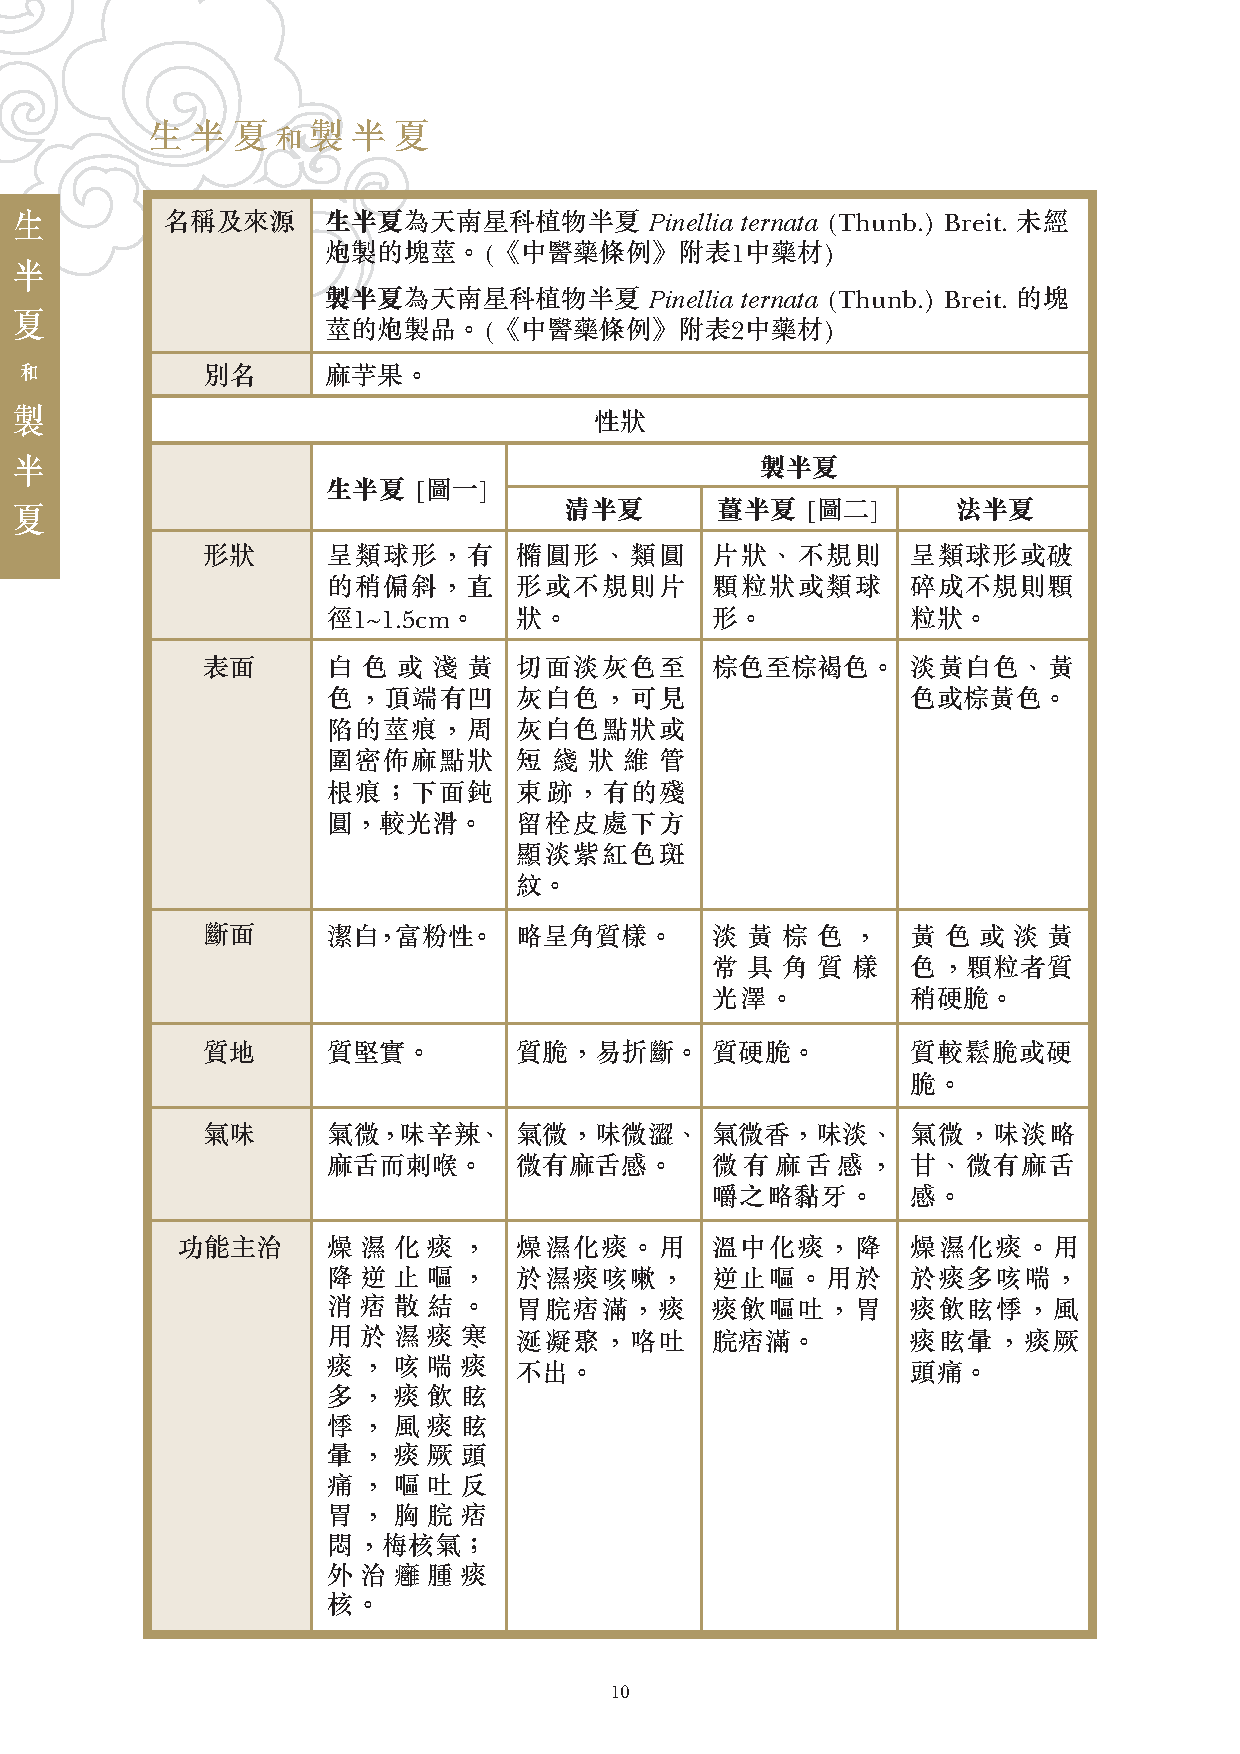 此圖片展示《曾與香港不良事件有關的中藥材參考資料》刊物的第10頁